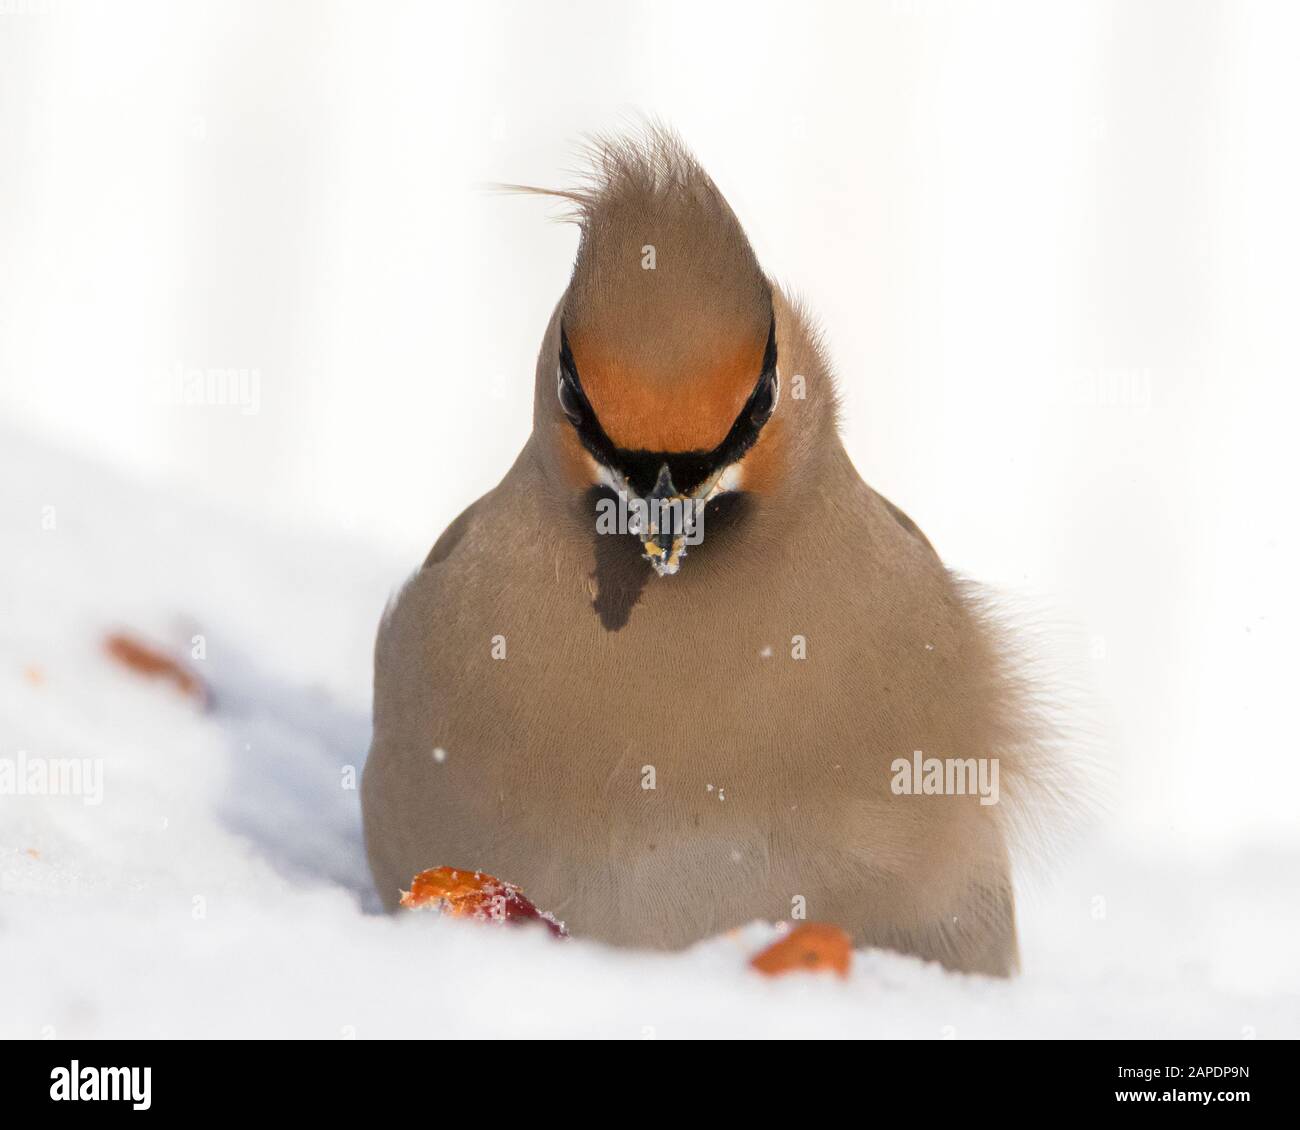 Vue de face gros portrait de l'oiseau de cire de Bohême dans la neige Banque D'Images